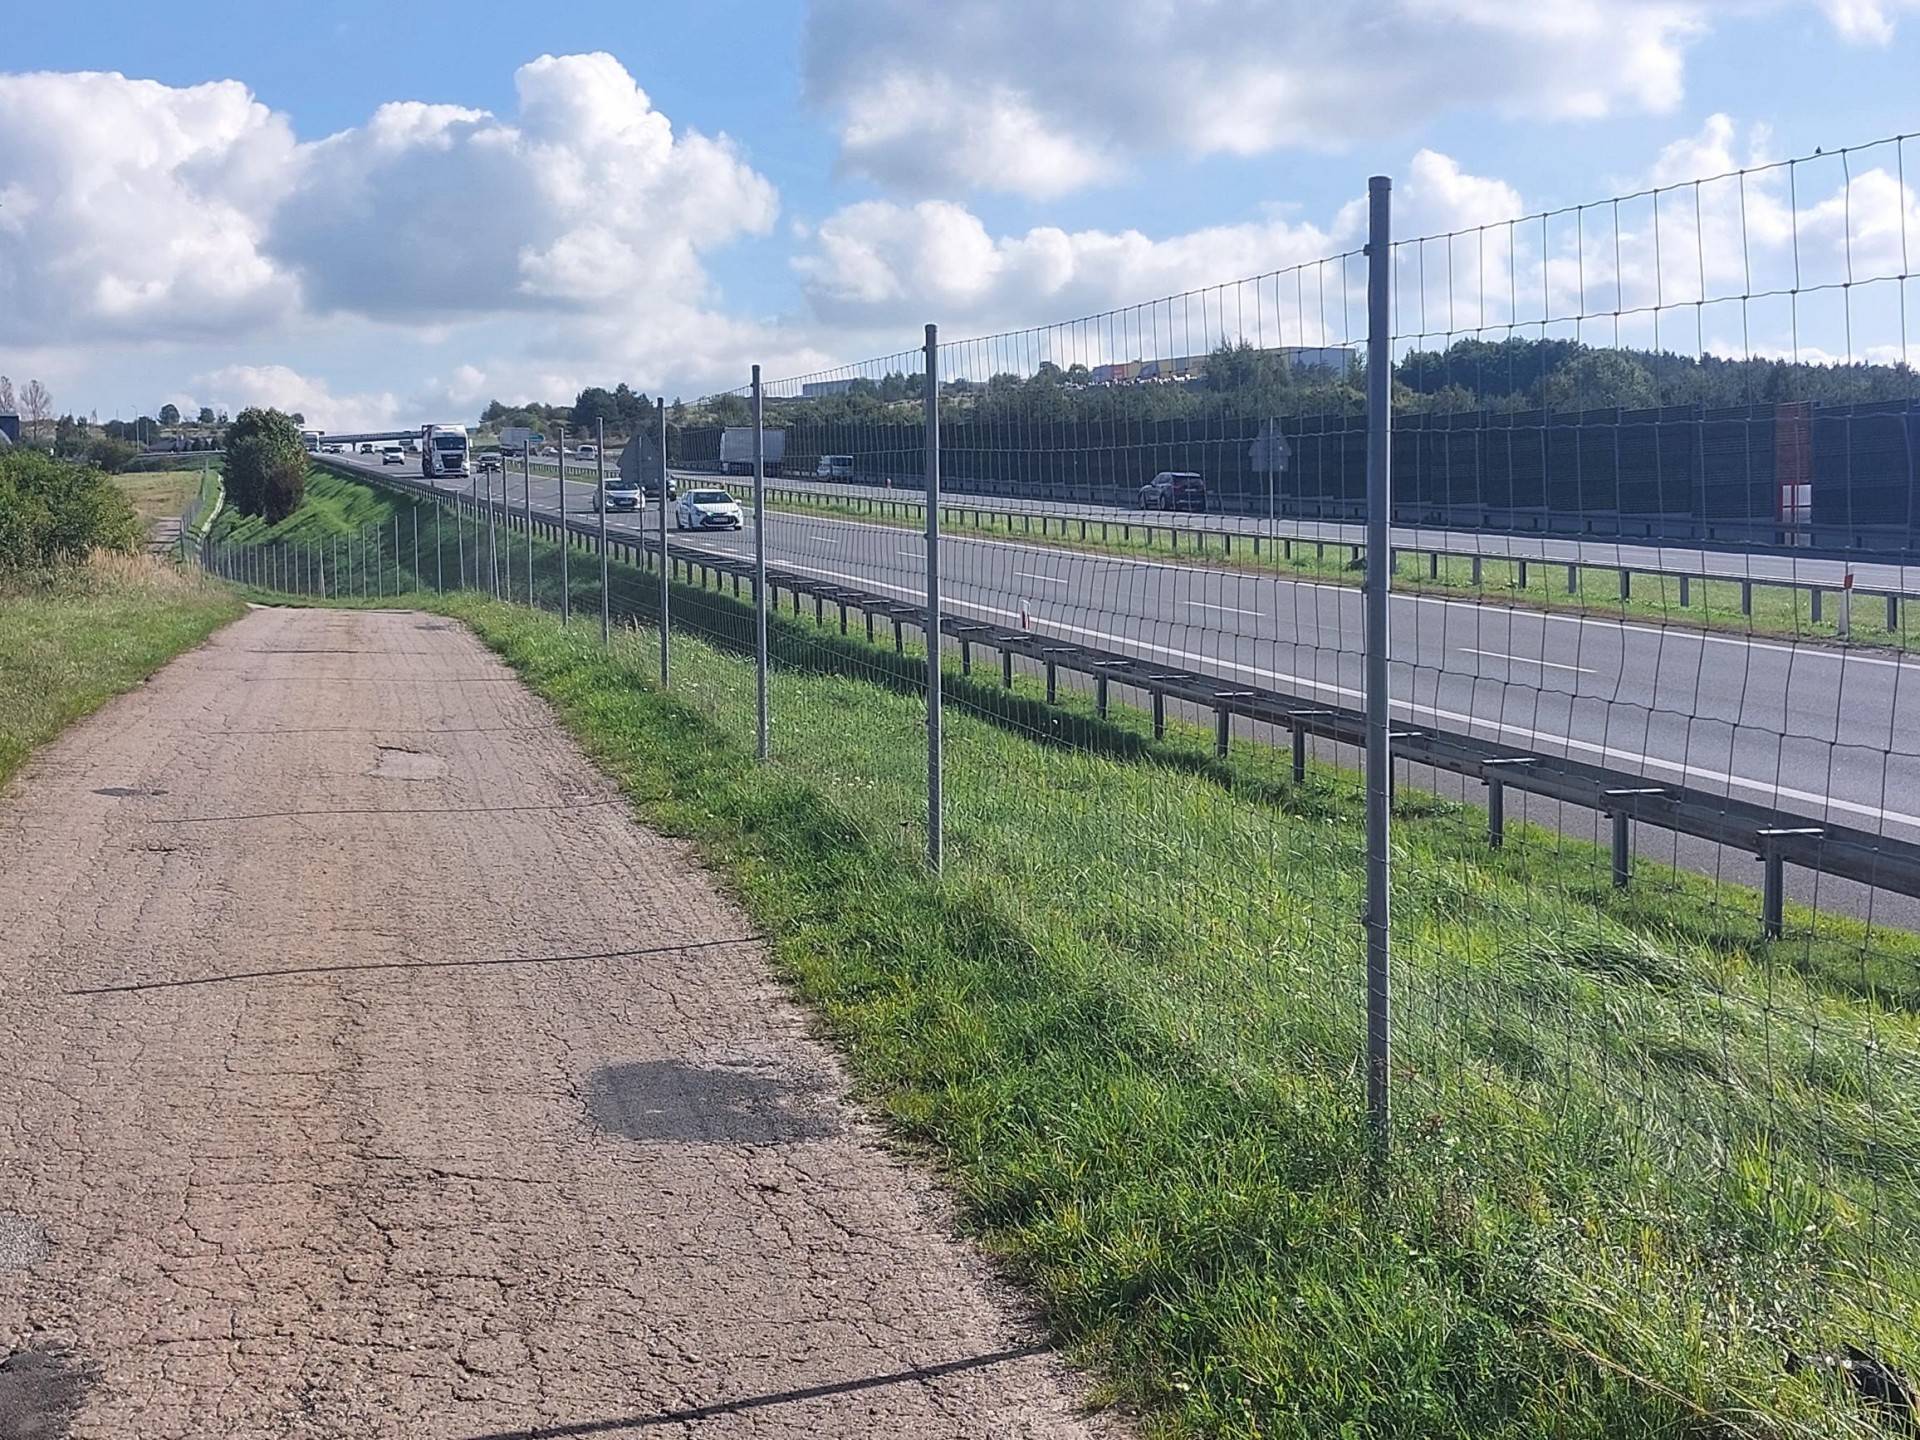 Rozbudują autostradę do Katowic, jak tylko wygaśnie koncesja Stalexportu